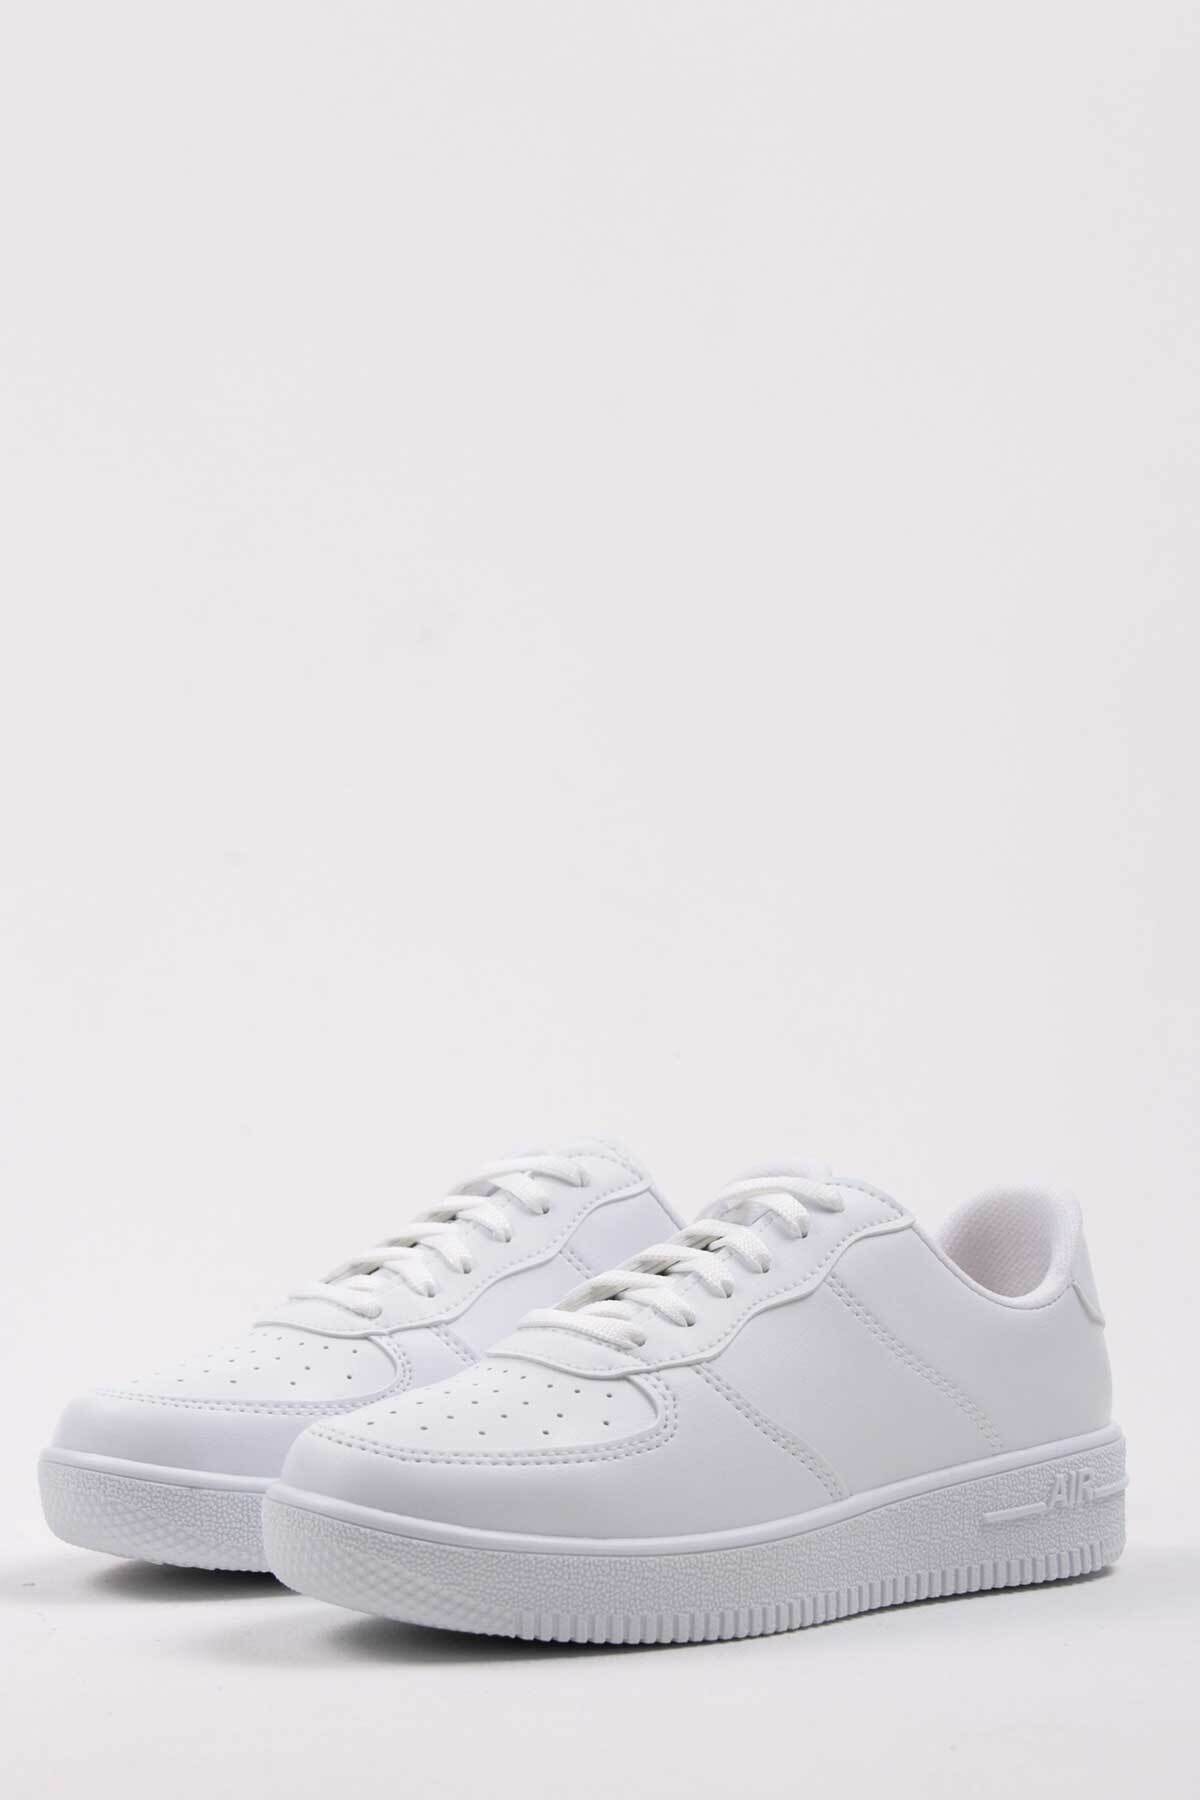 Kadın Beyaz Sneaker 1021-105-0010_1003